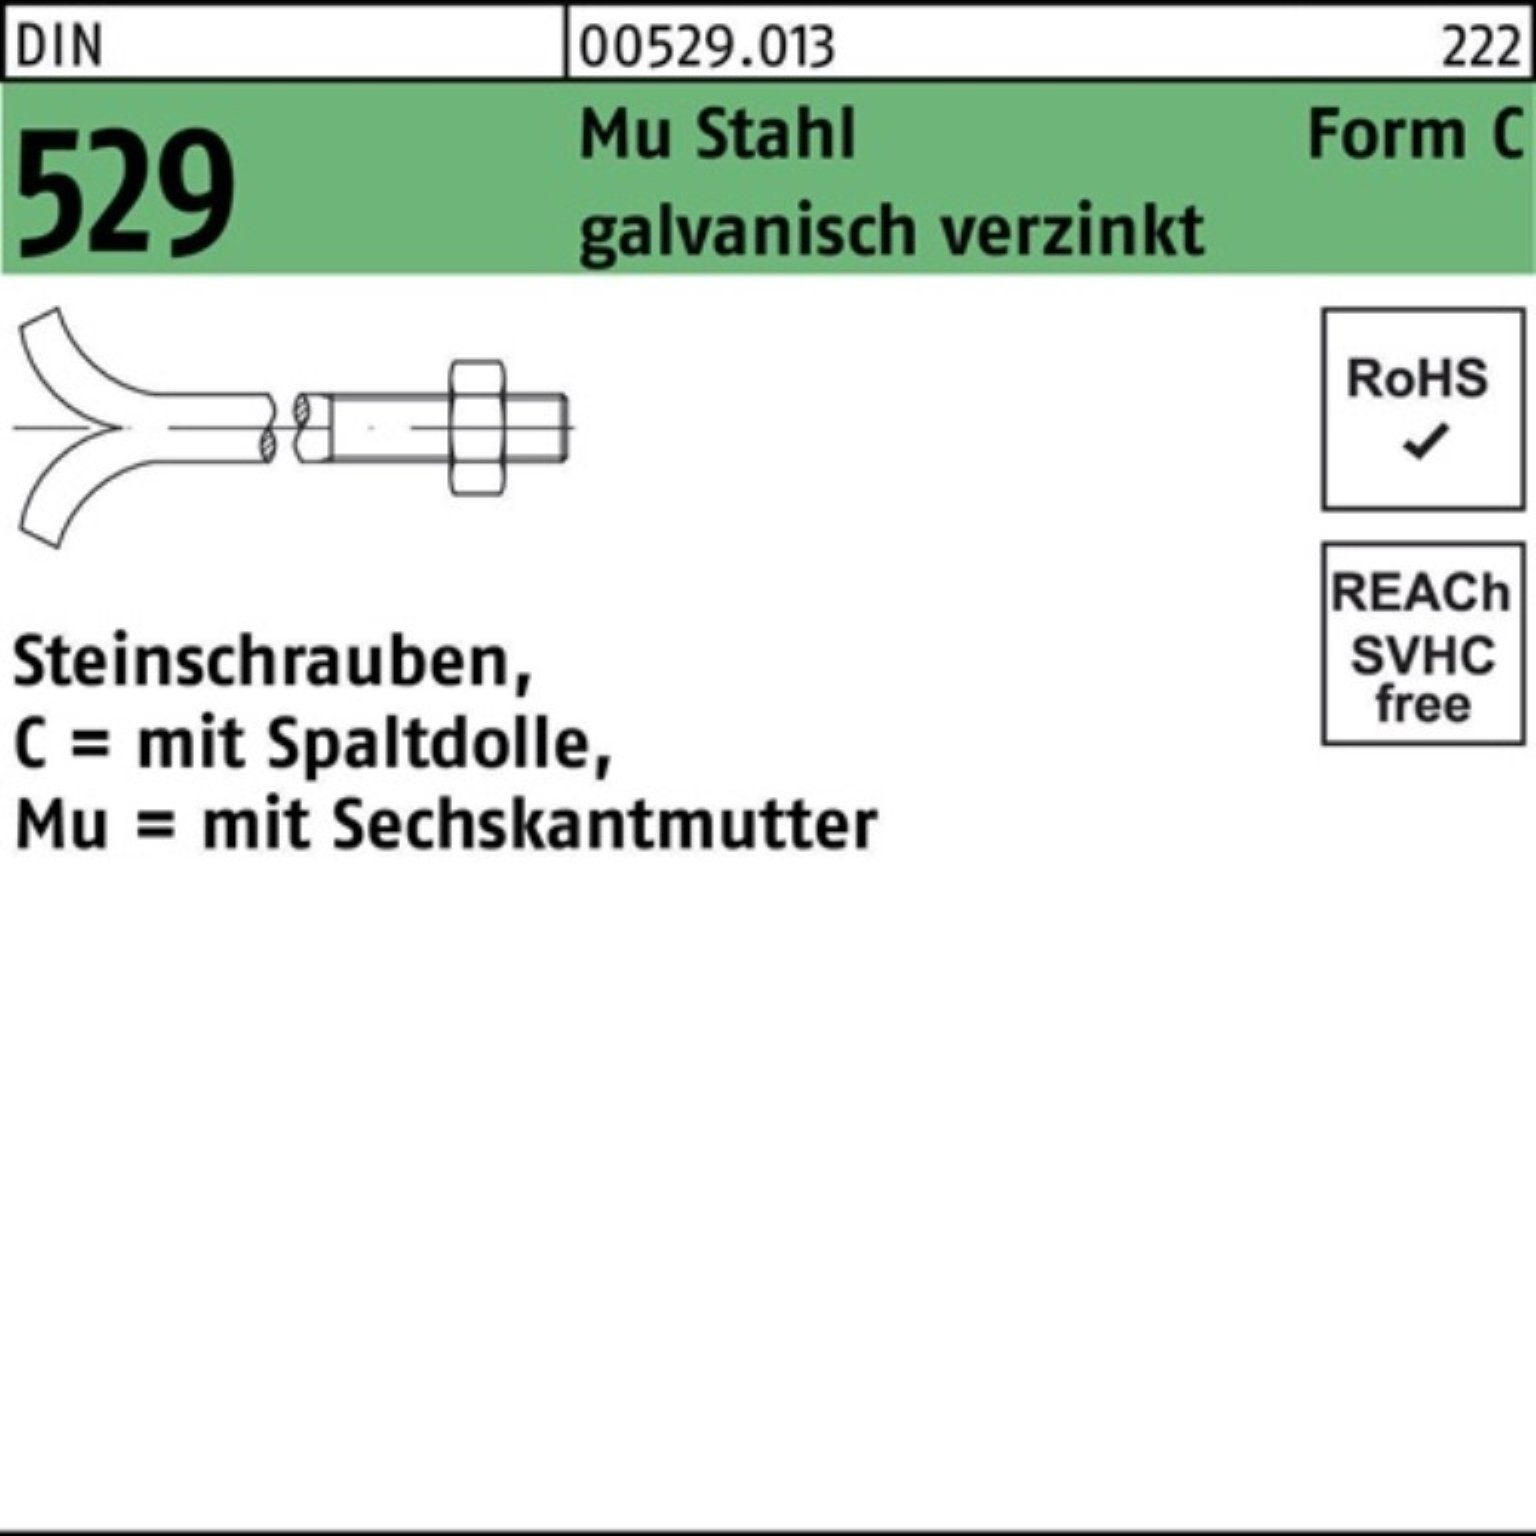 Reyher Schraube 100er Pack Steinschraube DIN 529 Spaltdolle/6-ktmutter CM 16x160 Mu 3.